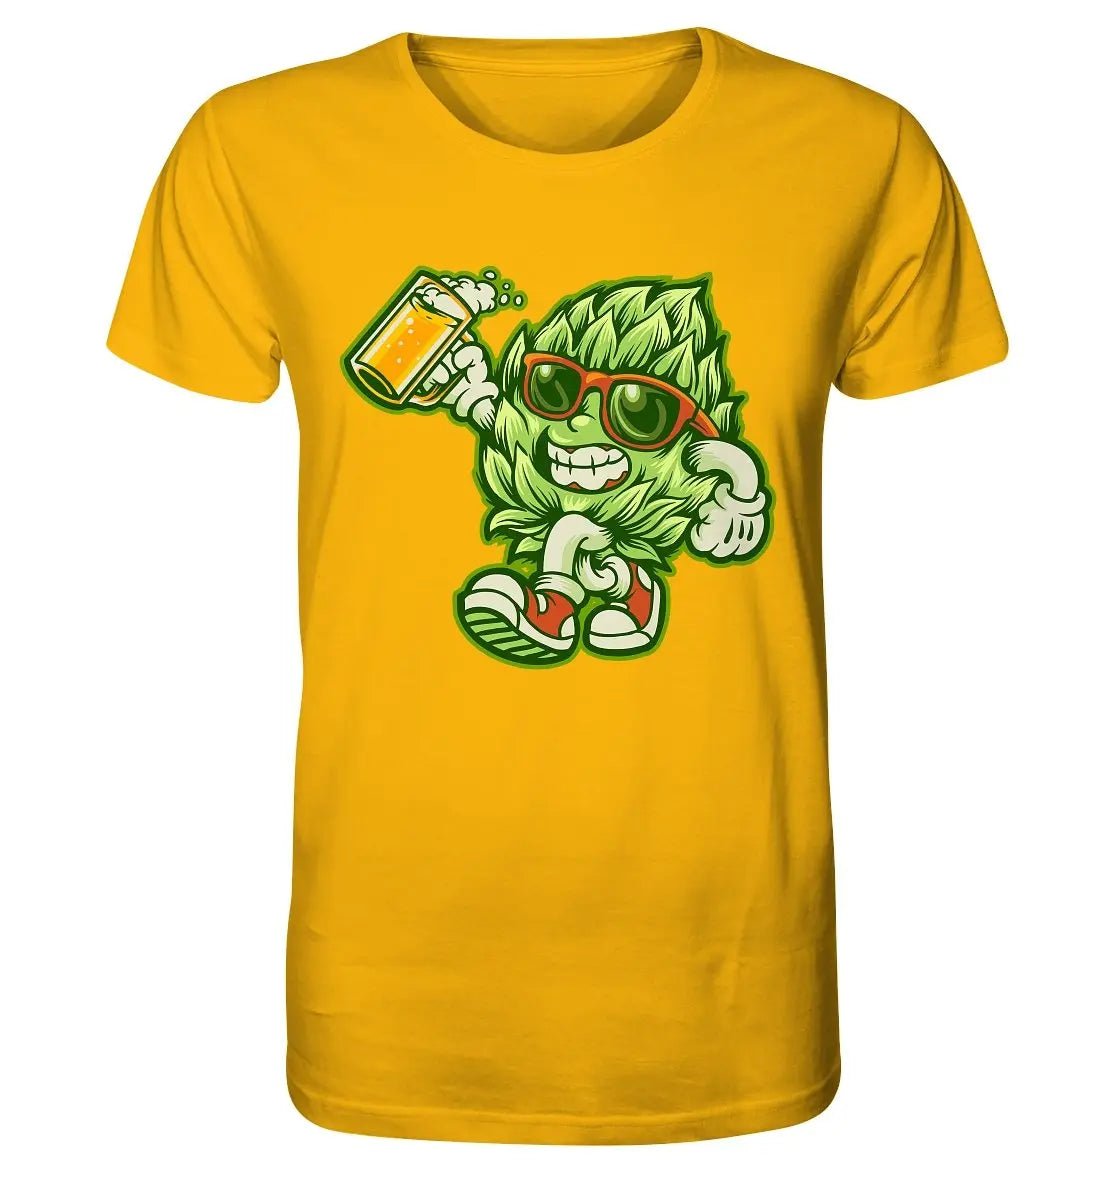 Ein Happy Hop – Bio-T-Shirt von Hoppymerch mit dem Bild einer Hopfenfigur, die ein Bier hält.